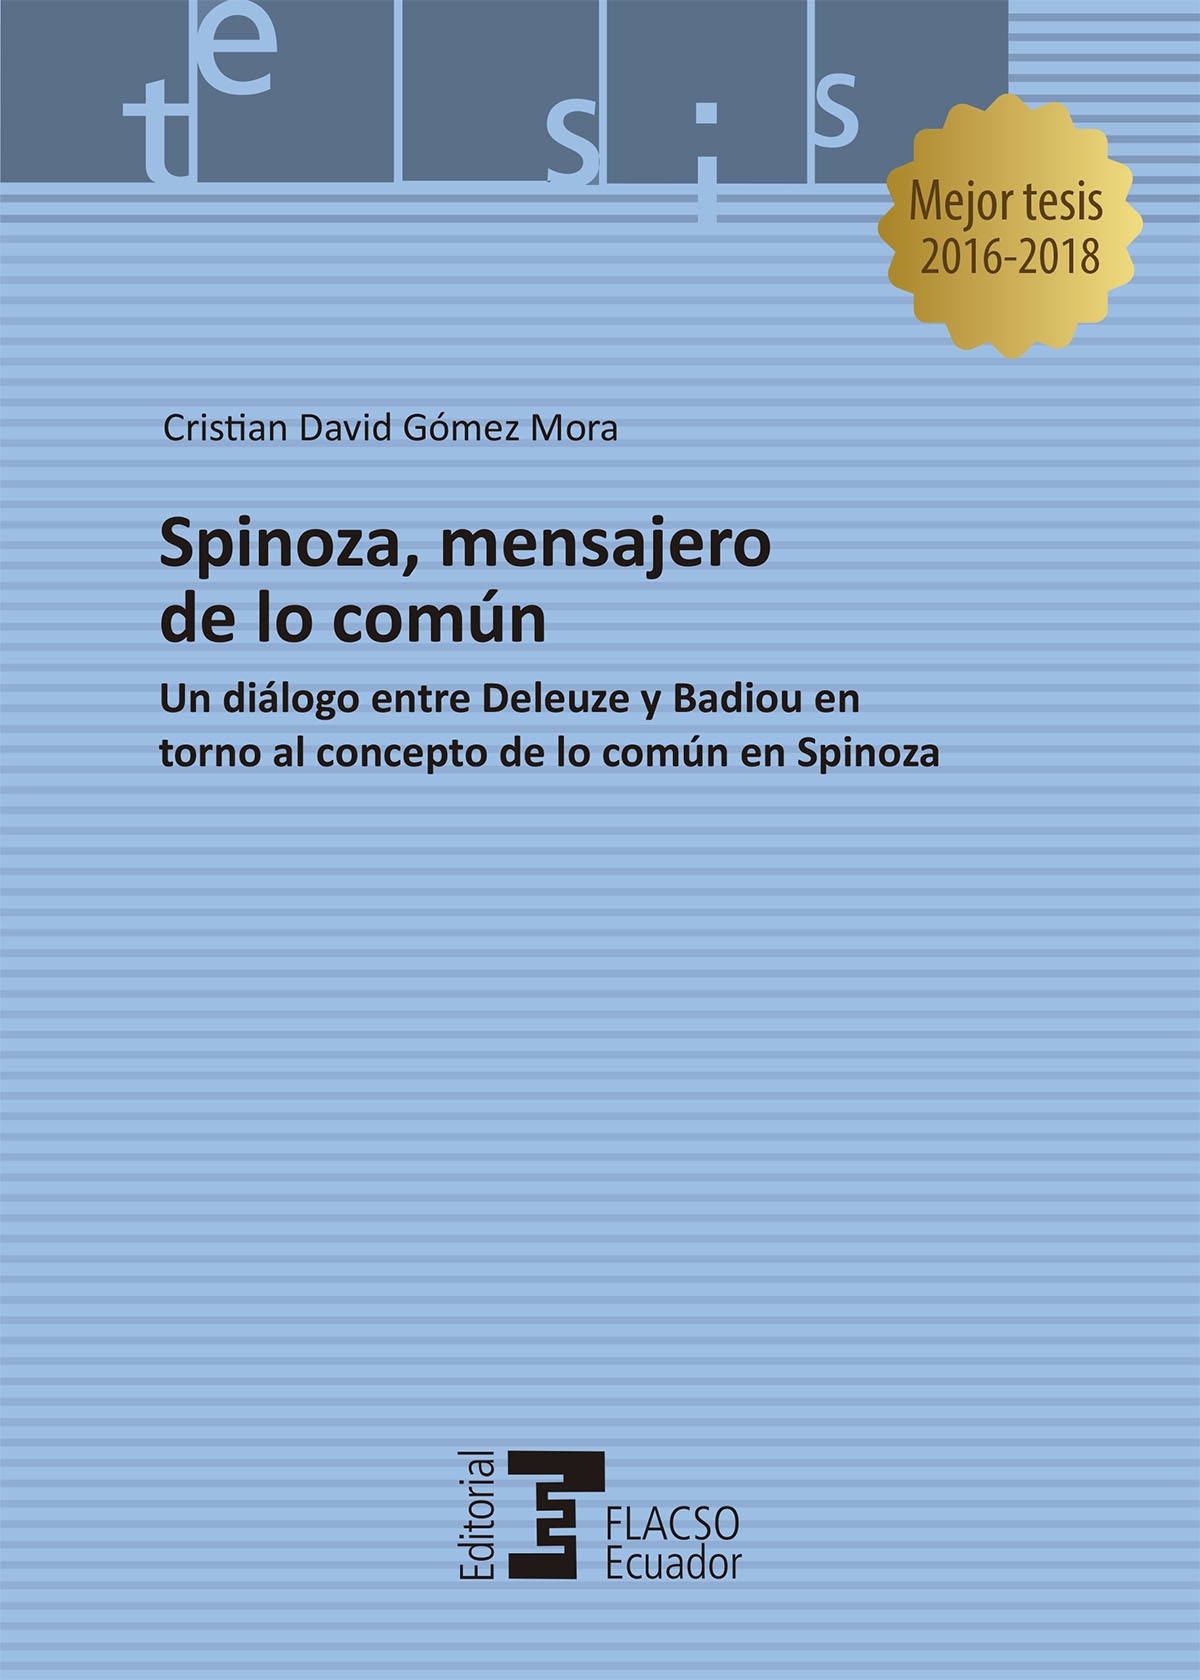 Spinoza, mensajero de lo común: un diálogo entre Deleuze y Badiou en torno al concepto de lo común de Spinoza